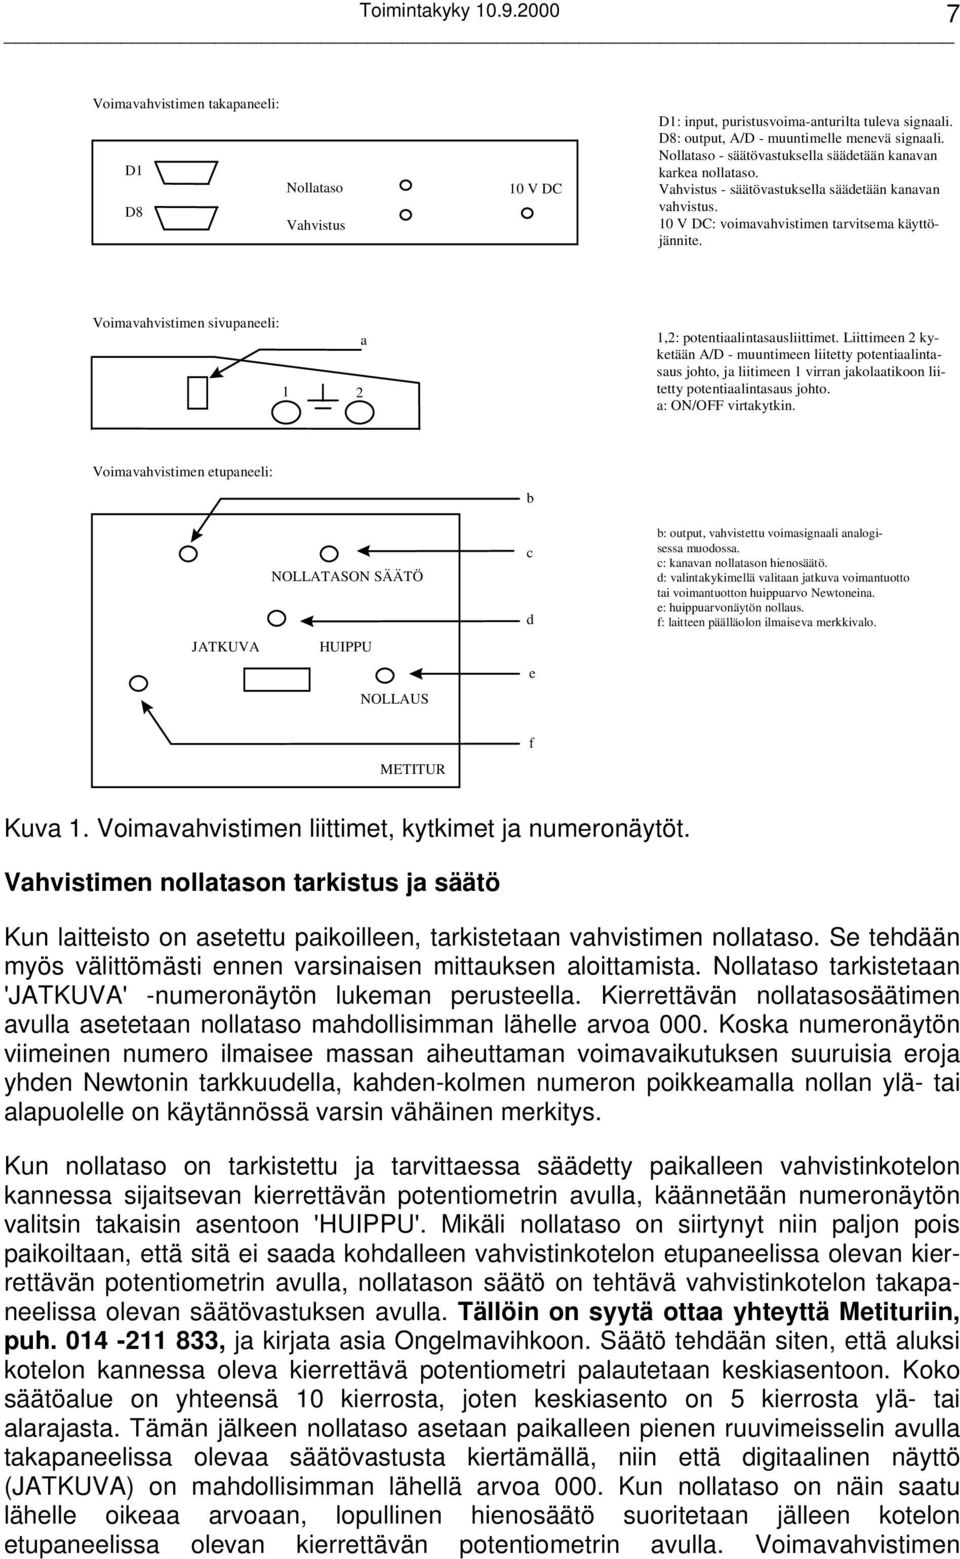 TERVEYS 2000 Tutkimus suomalaisten terveydestä ja toimintakyvystä  TOIMINTAKYKYTUTKIMUS - PDF Ilmainen lataus